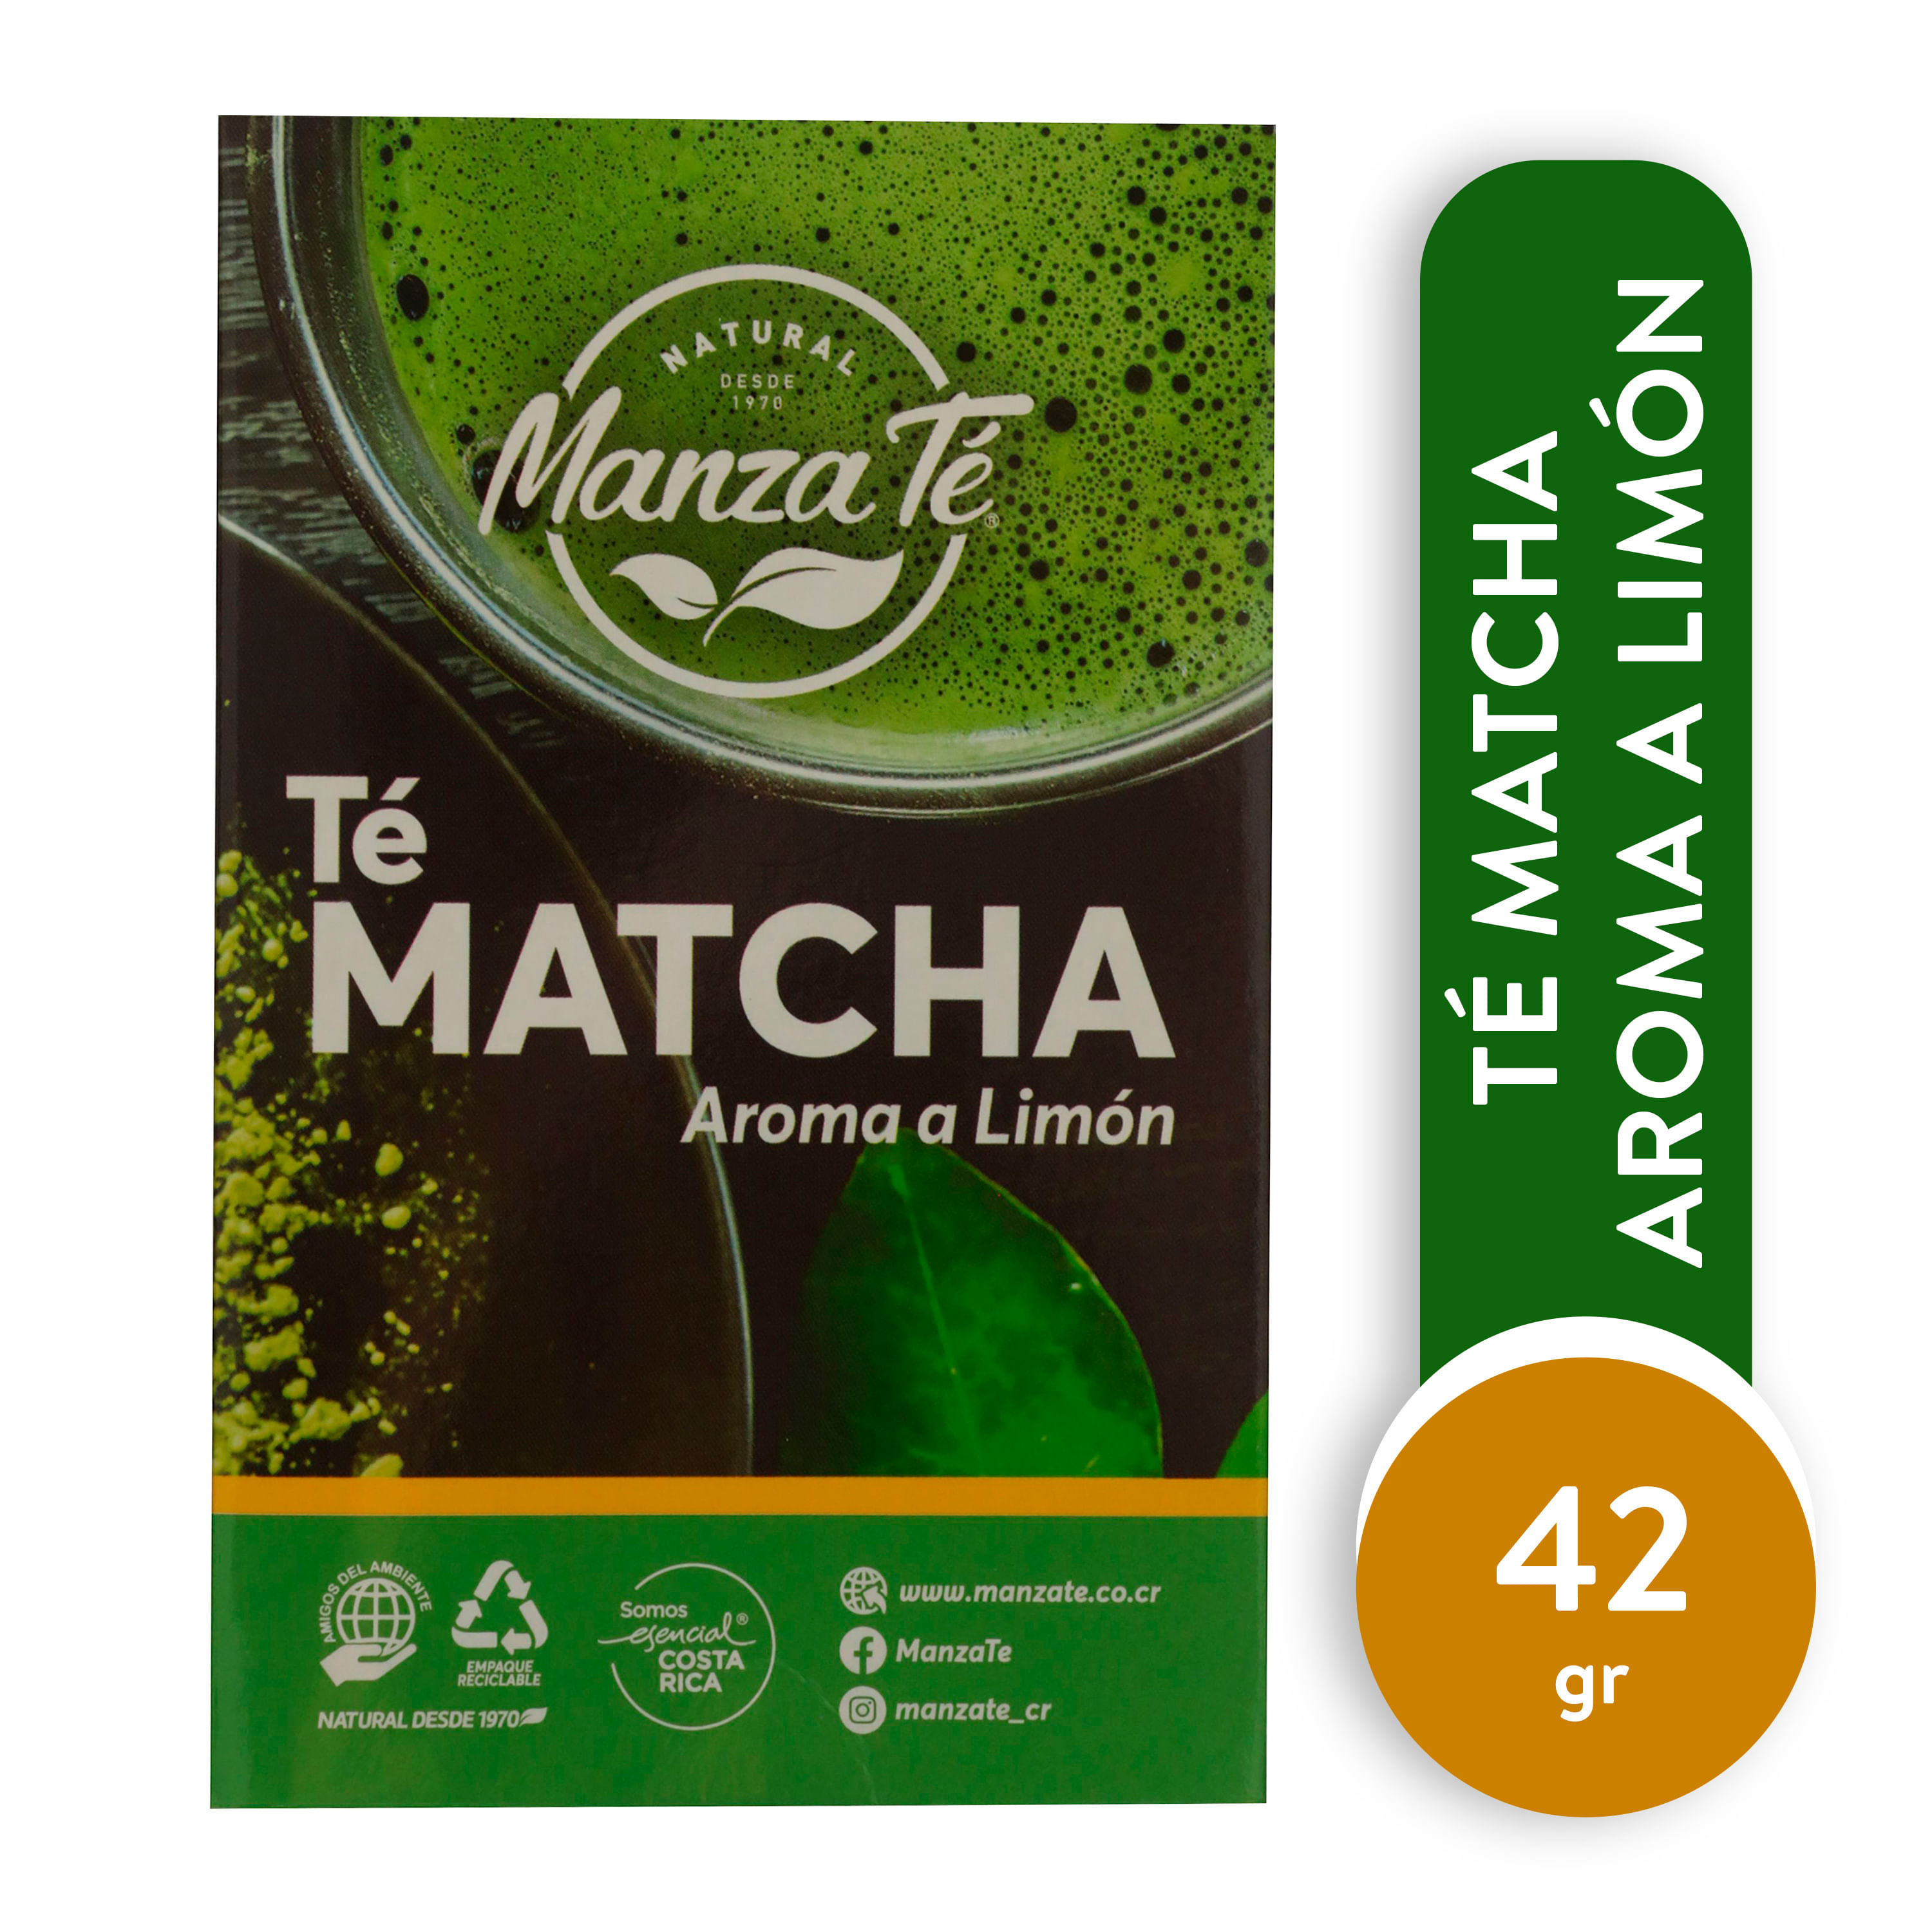 Comprar Té Matcha Aroma Limón Detox Manzate Caja 14 Unidades -42gr, Walmart Costa Rica - Maxi Palí